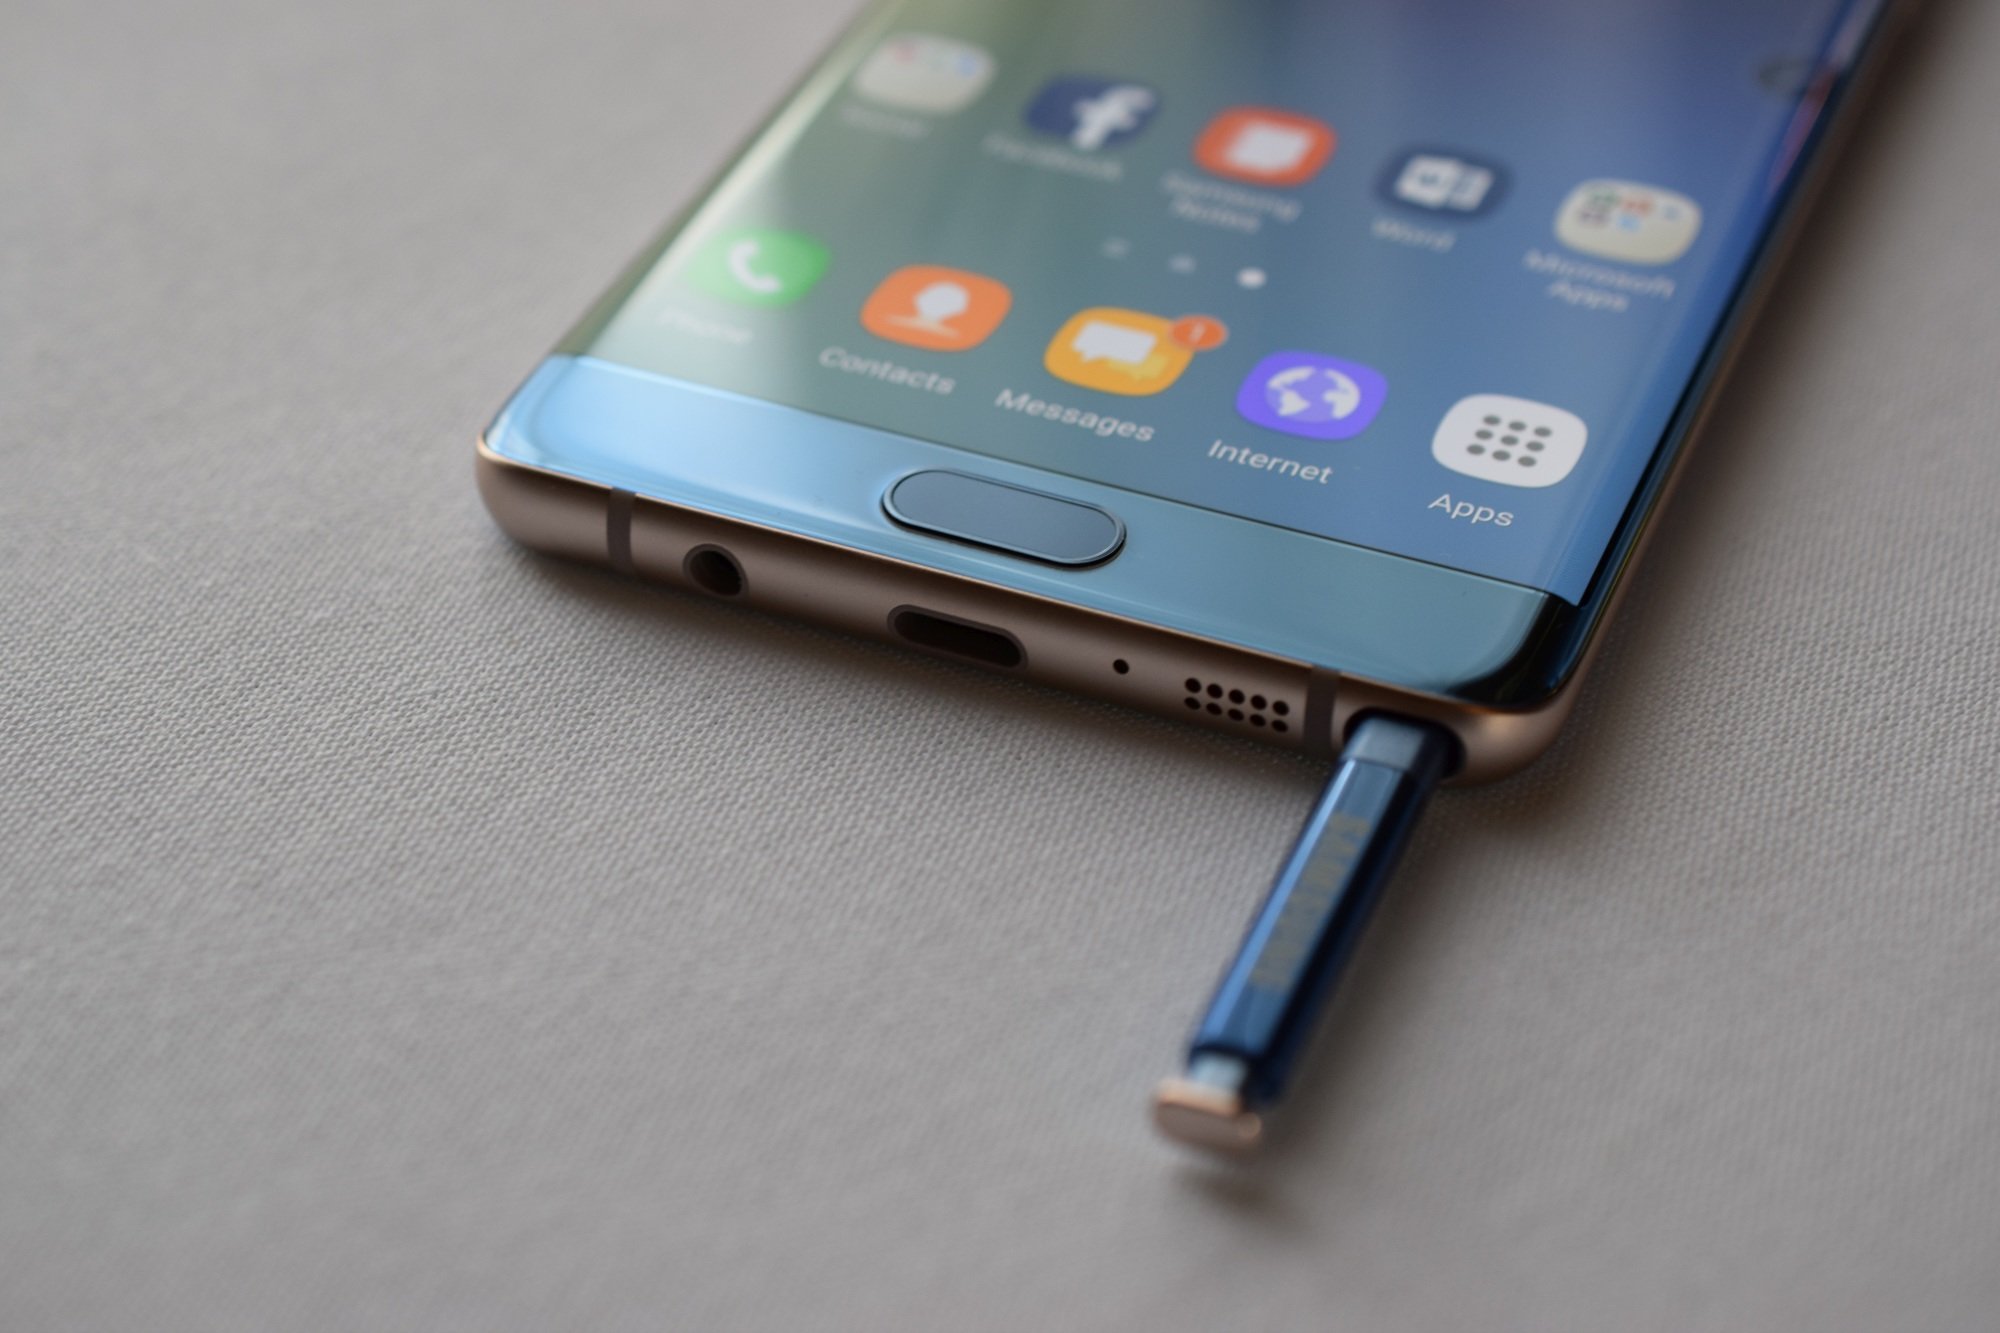 Περισσότερες πληροφορίες για "Οι δυνατότητες του S Pen του Galaxy Note 9 επιβεβαιώνονται μέσω του...Galaxy Tab S4"